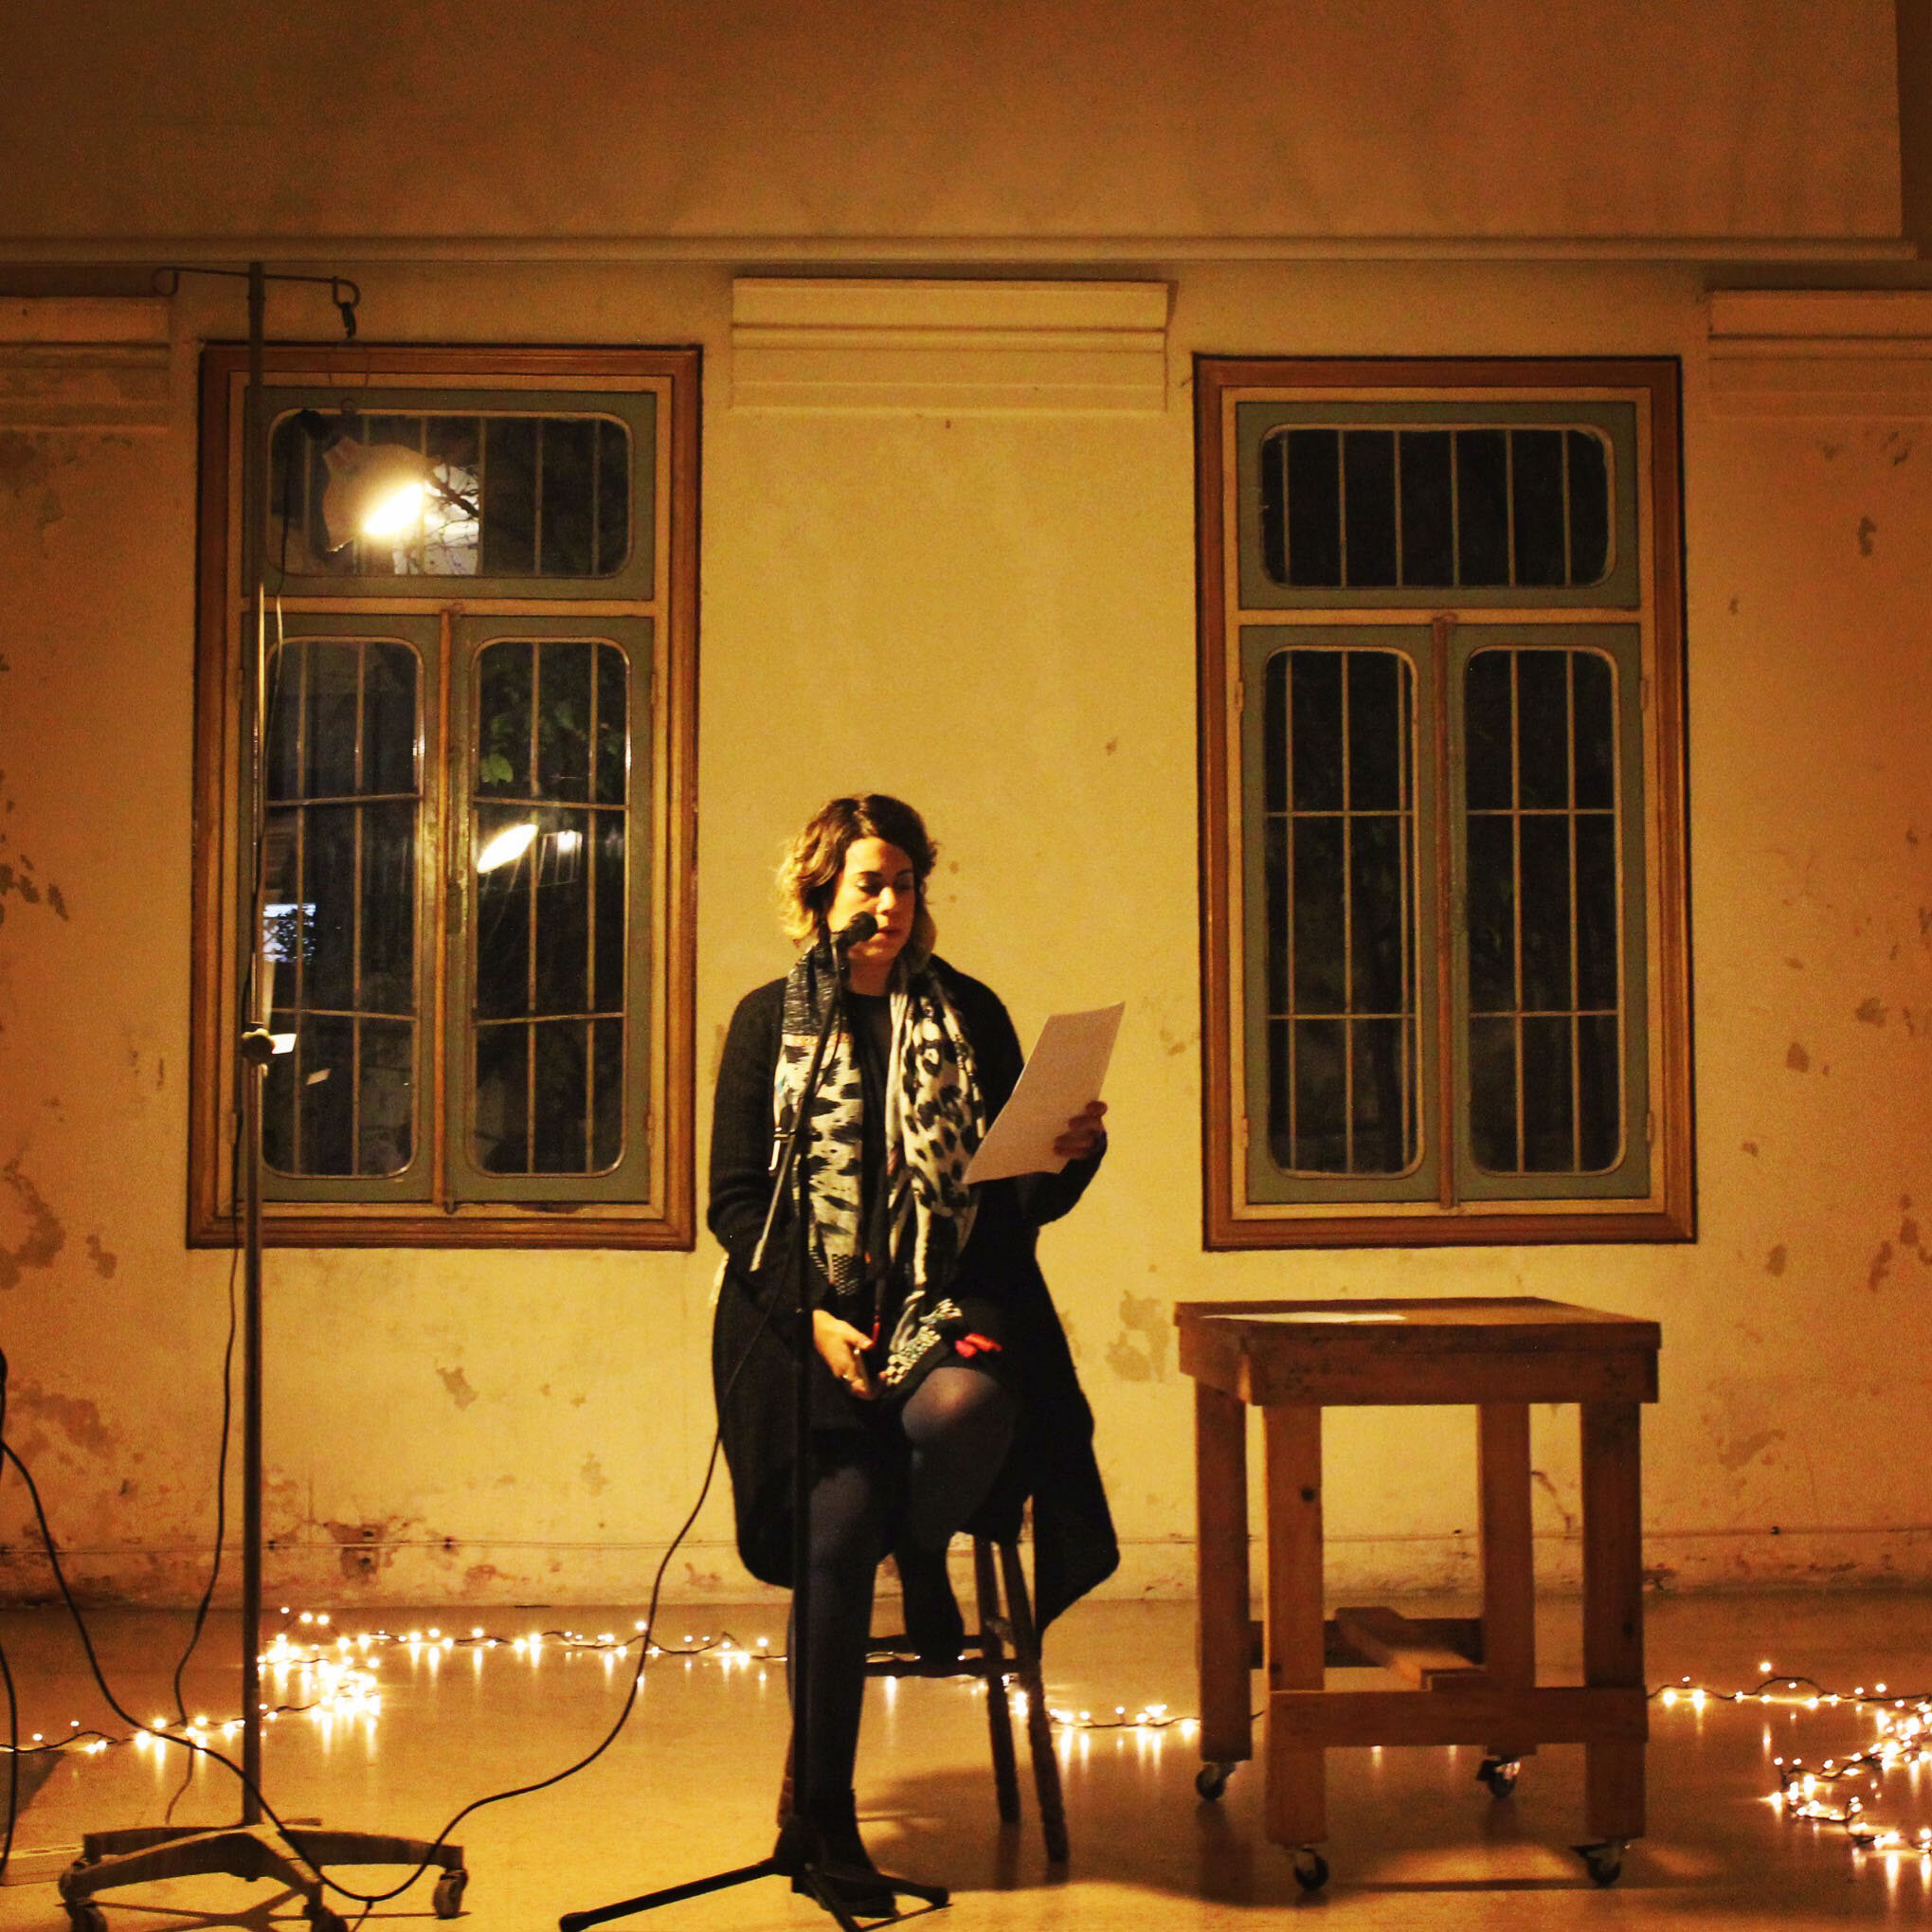 ريوا زيناتي تقدم الشعر في حفل سكون في القصر في بيروت (حقوق الصورة لريوا زيناتي)